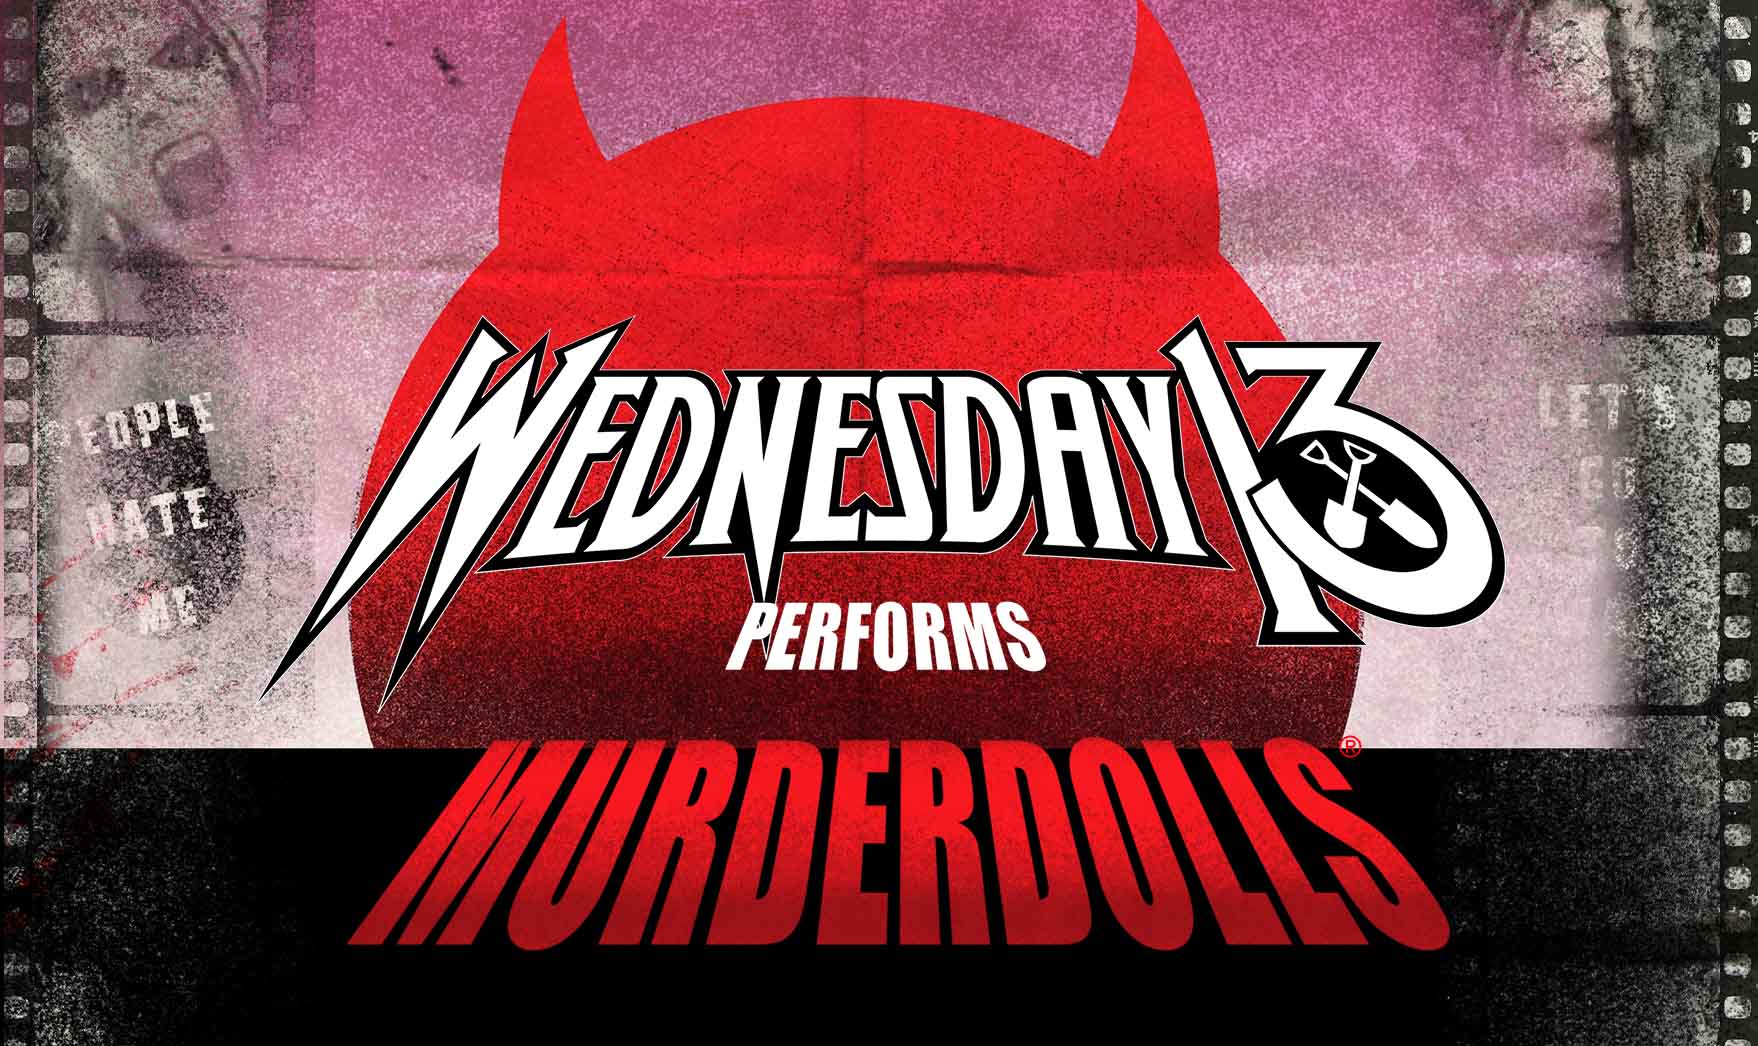 Billets Wednesday 13 Performing Murderdolls (Manchester Club Academy - Manchester)